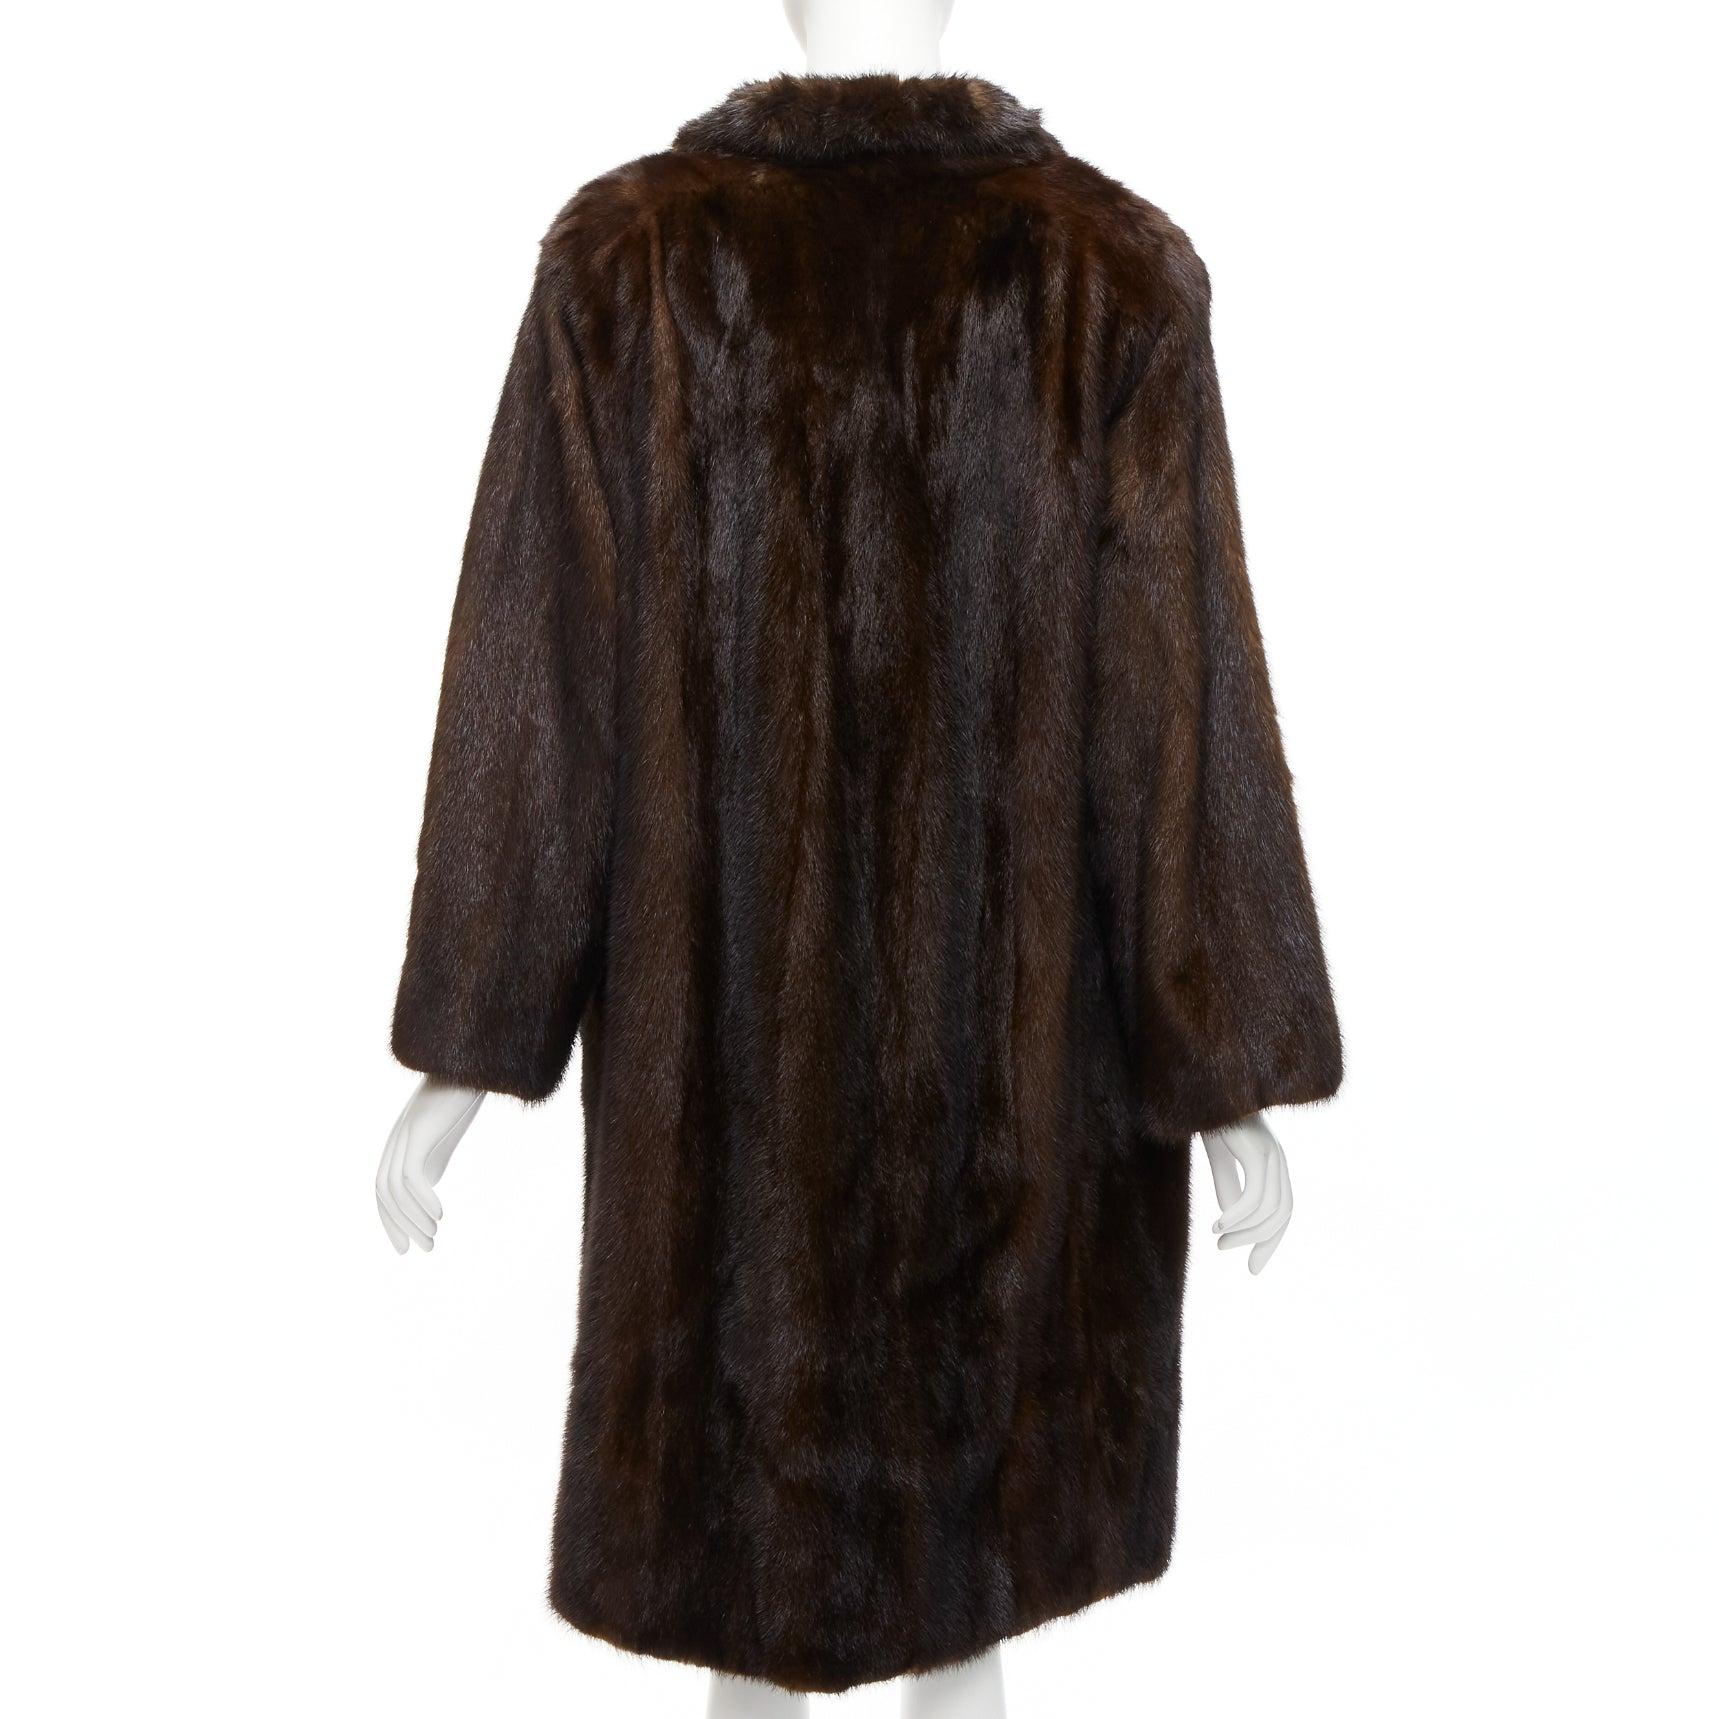 UNLABELLED dark brown genuine fur tie collar longline long sleeve jacket coat For Sale 1